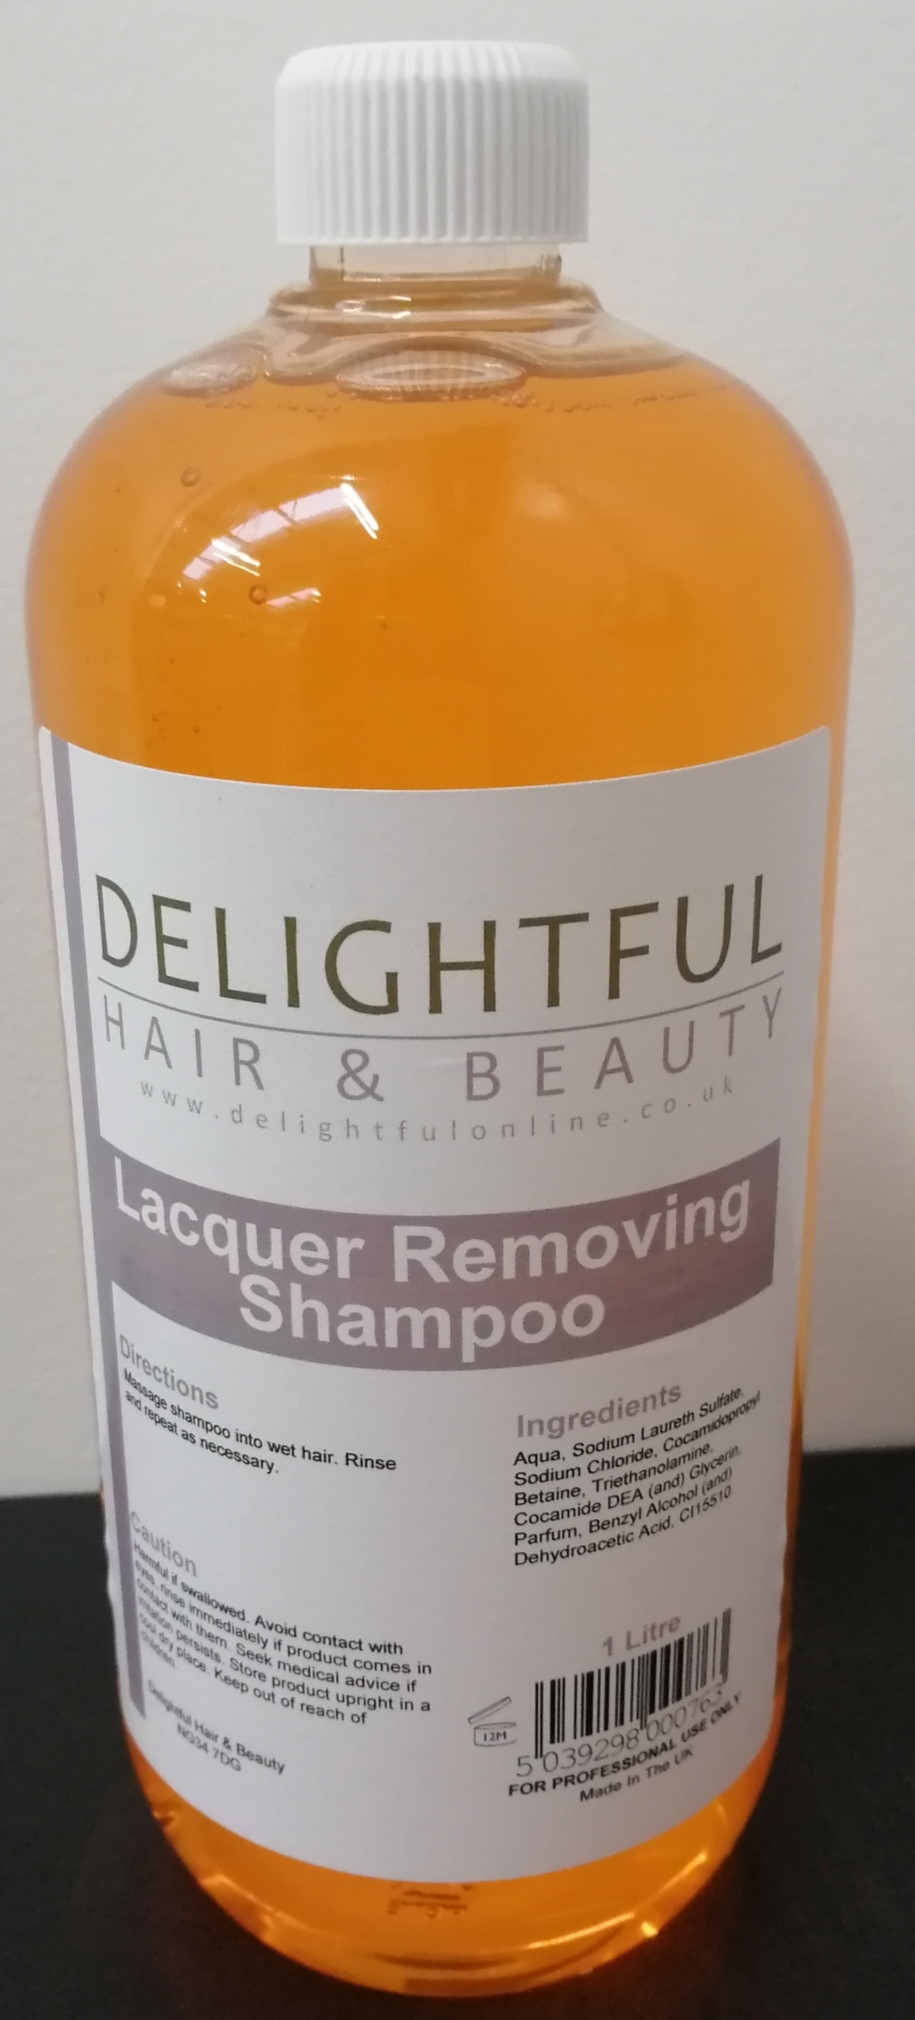 Delightful Lacquer Removing Shampoo (1L)